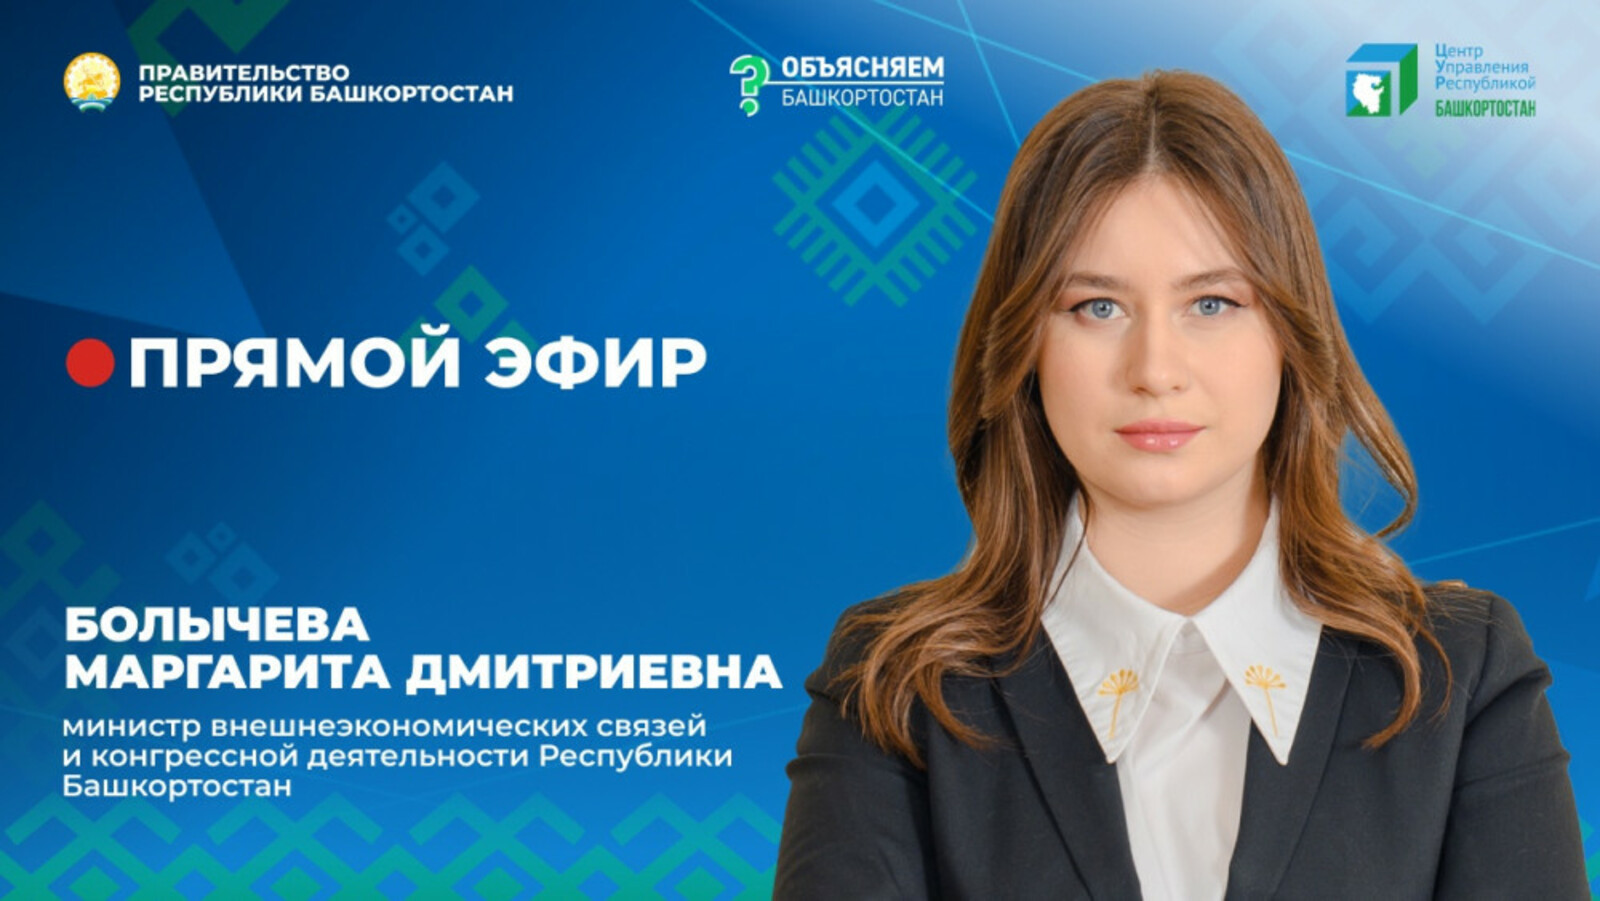 Маргарита Болычева: важно поддержать наш бизнес